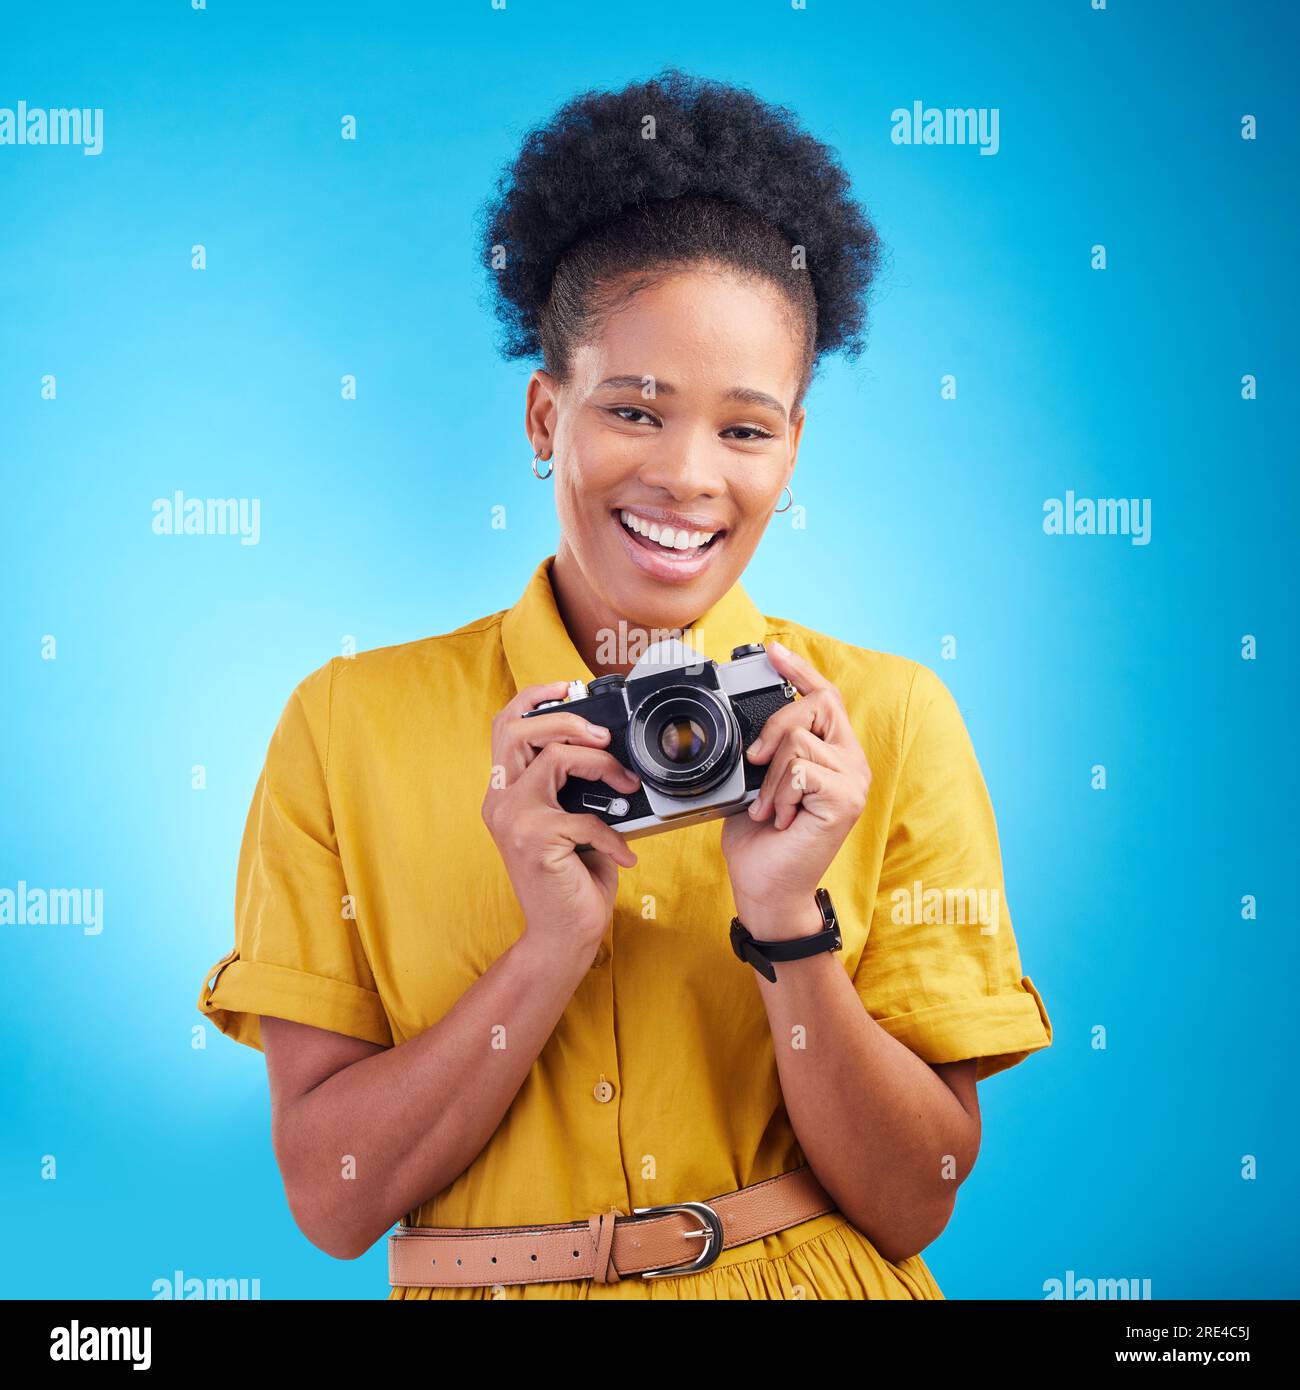 Photographie, portrait et femme noire avec appareil photo, sourire et isolé sur fond bleu, travail d'artiste créatif et talent. Art, visage de heureux Banque D'Images